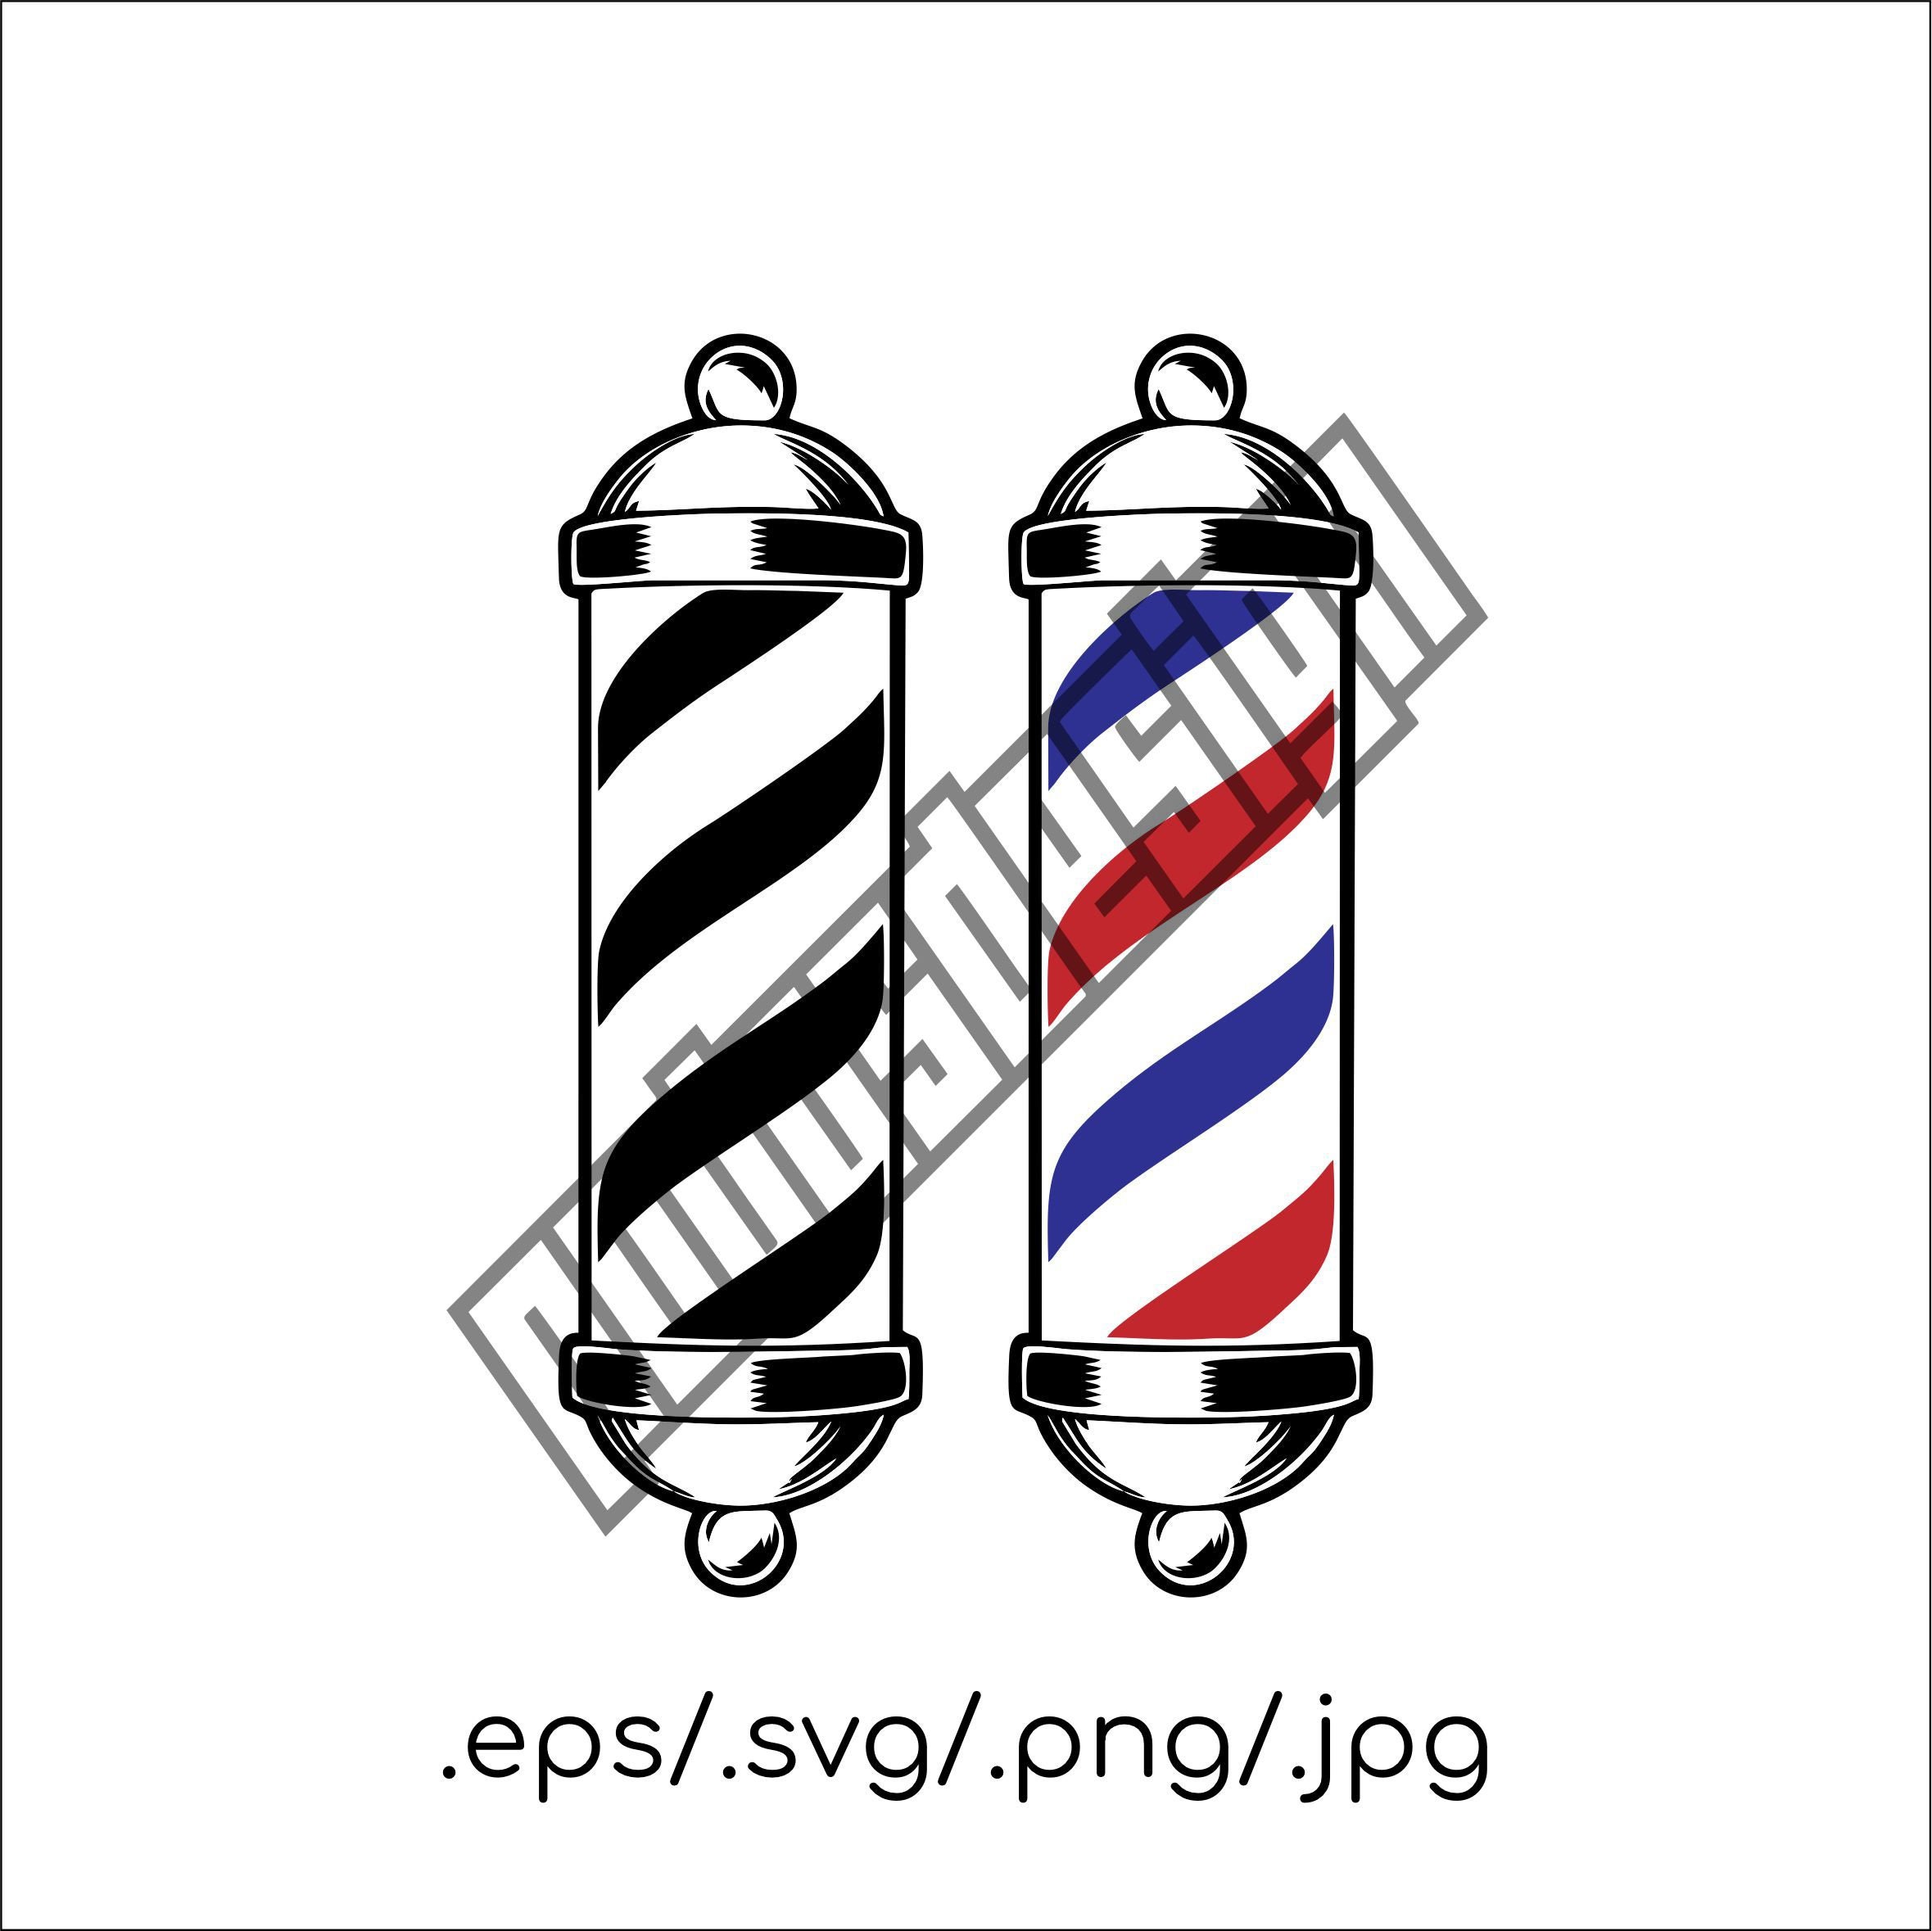 Scissor SVG, Scissor PNG, Barber Scissor Clipart, Haircut Scissor